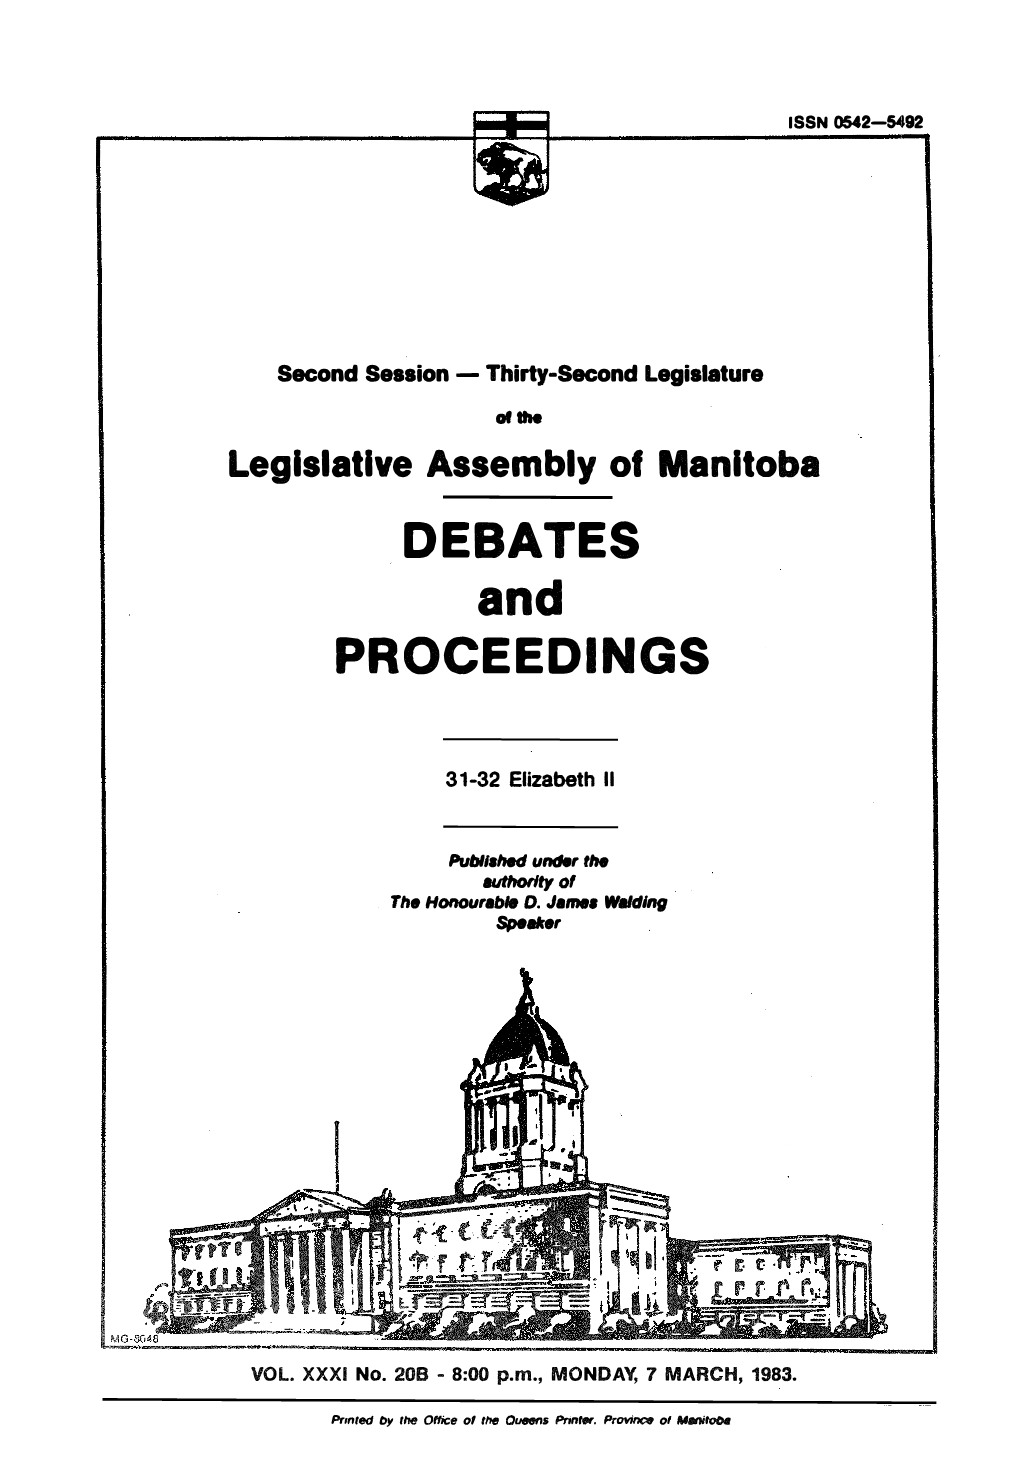 Debates Proceedings